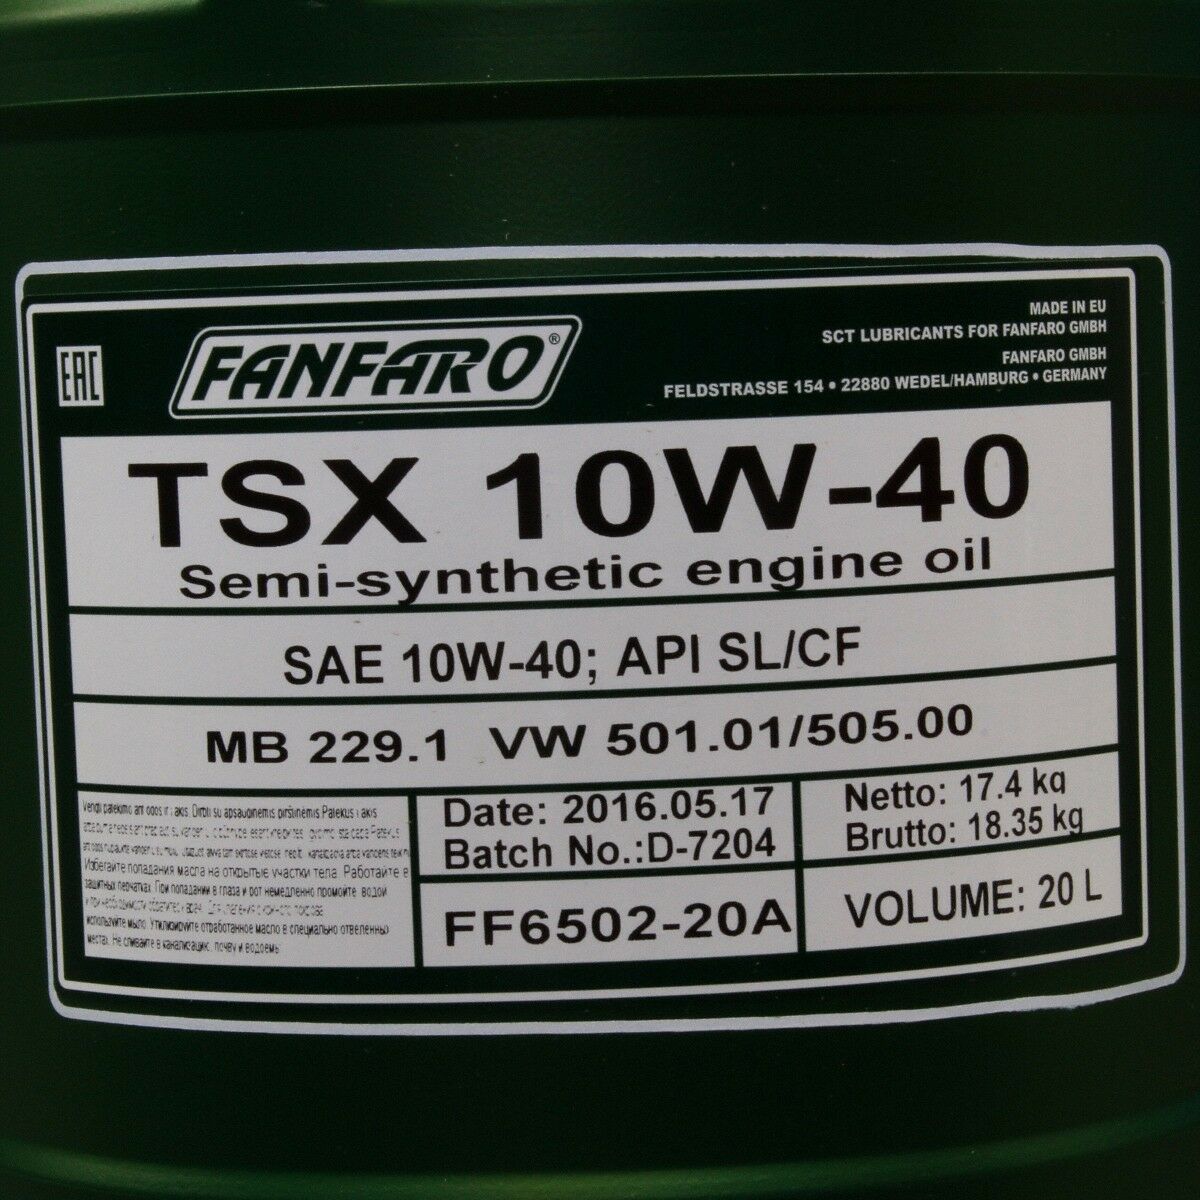 40 Liter FANFARO TSX 10W-40 SN Motoröl MB 229.1 VW 501.01 505.00 Economy Class